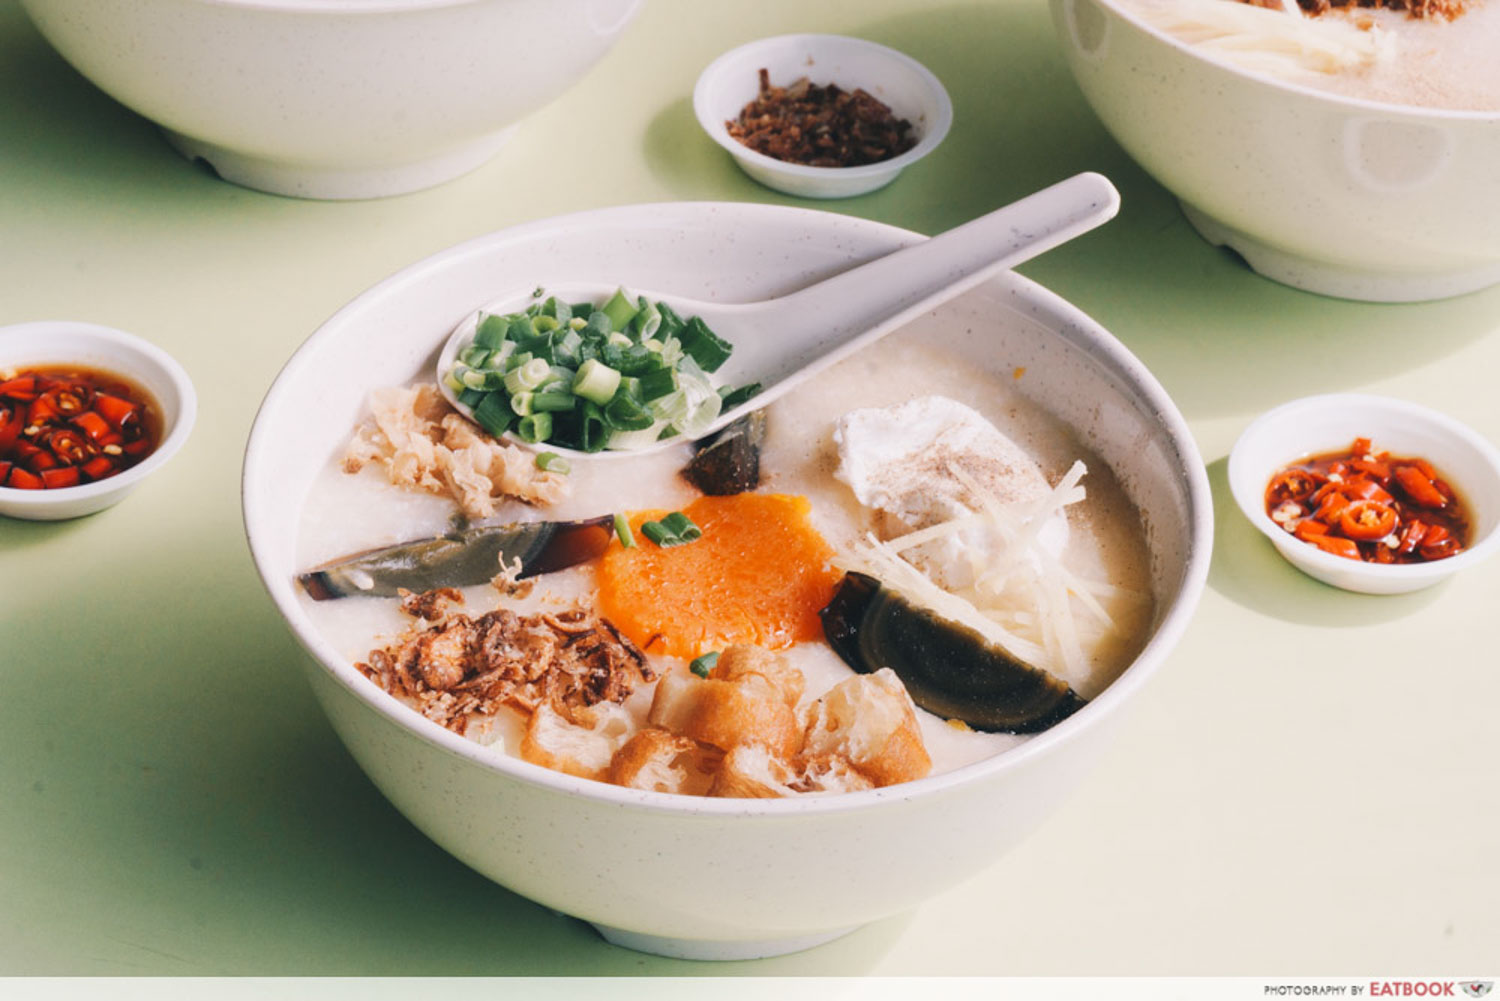 Weng Kiang Kee Porridge - Eggs